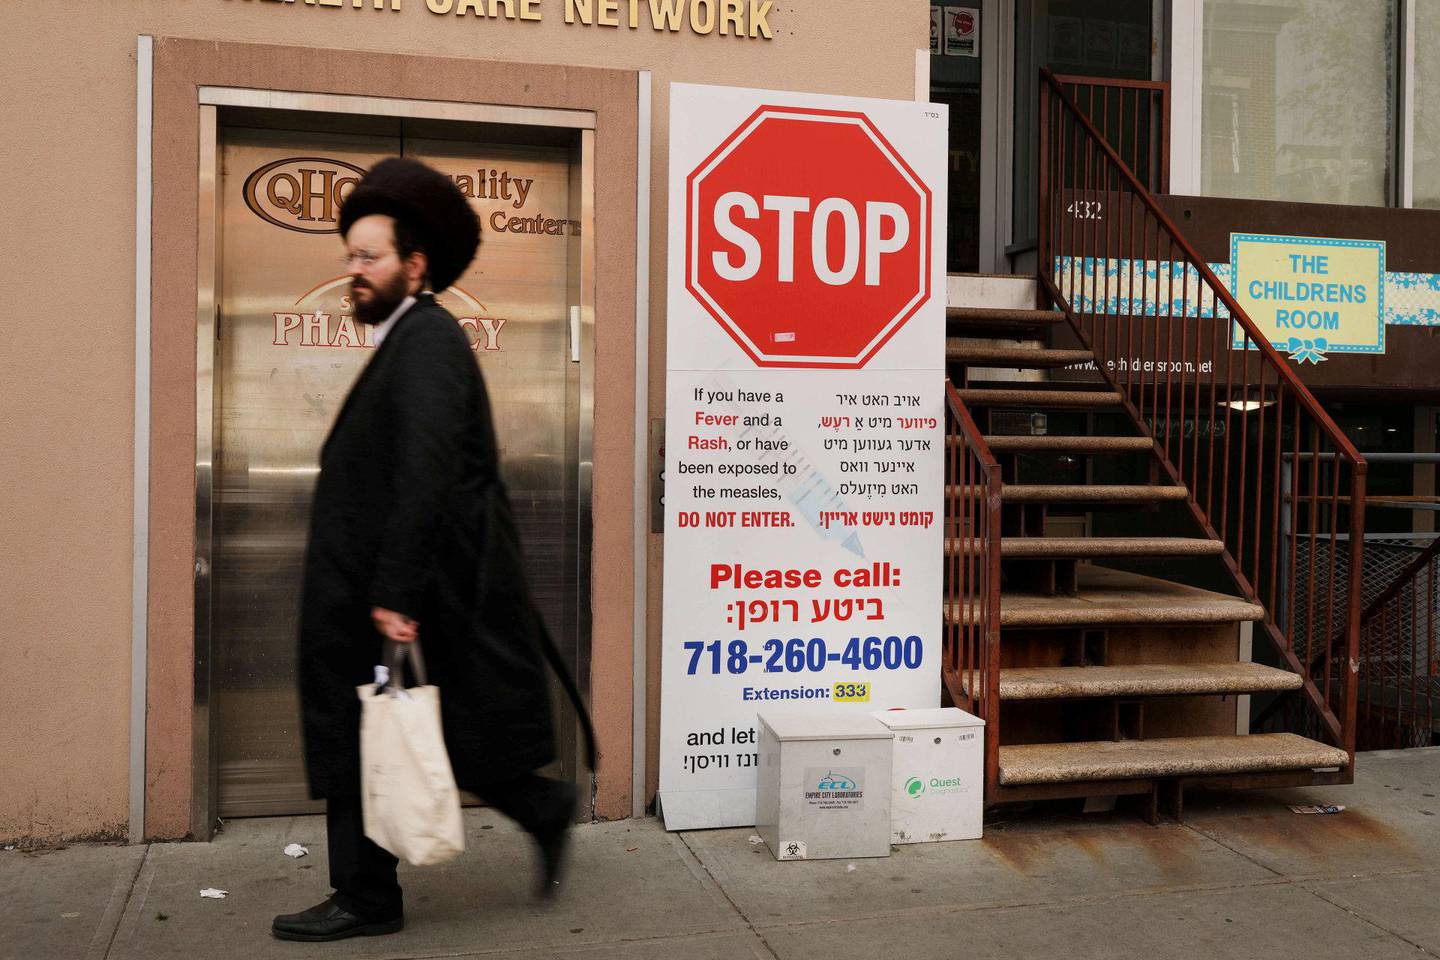 RAMMET: Særlig blant ultraortodokse jøder i Williamsburg i Brooklyn har mange nektet å gi barna vaksiner. FOTO: NTB SCANPIX